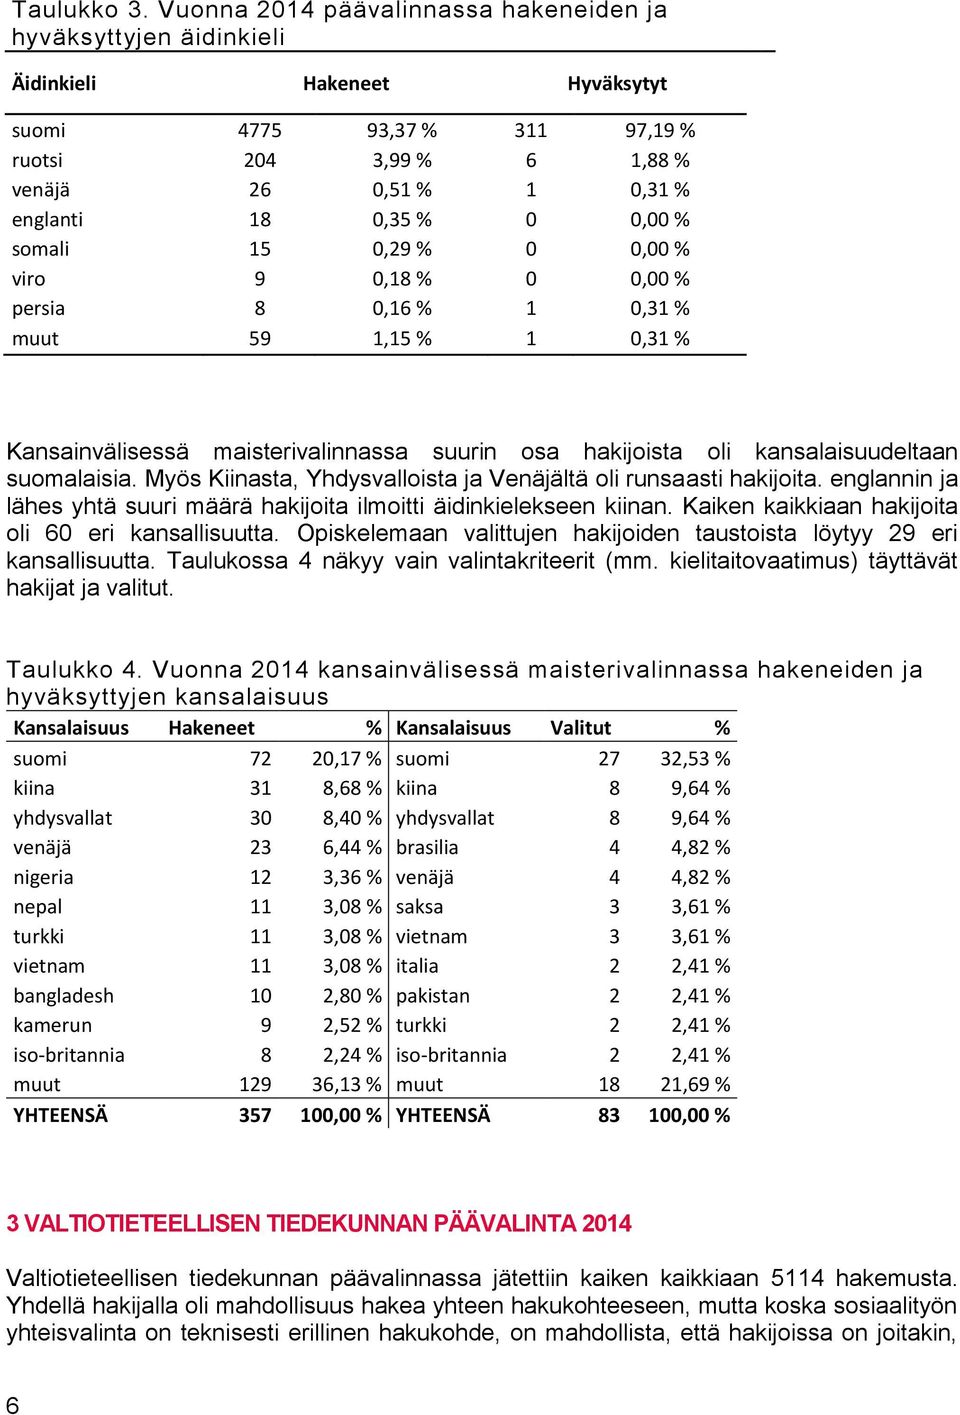 Kansainvälisessä maisterivalinnassa suurin osa hakijoista oli kansalaisuudeltaan suomalaisia. Myös Kiinasta, Yhdysvalloista ja Venäjältä oli runsaasti hakijoita.